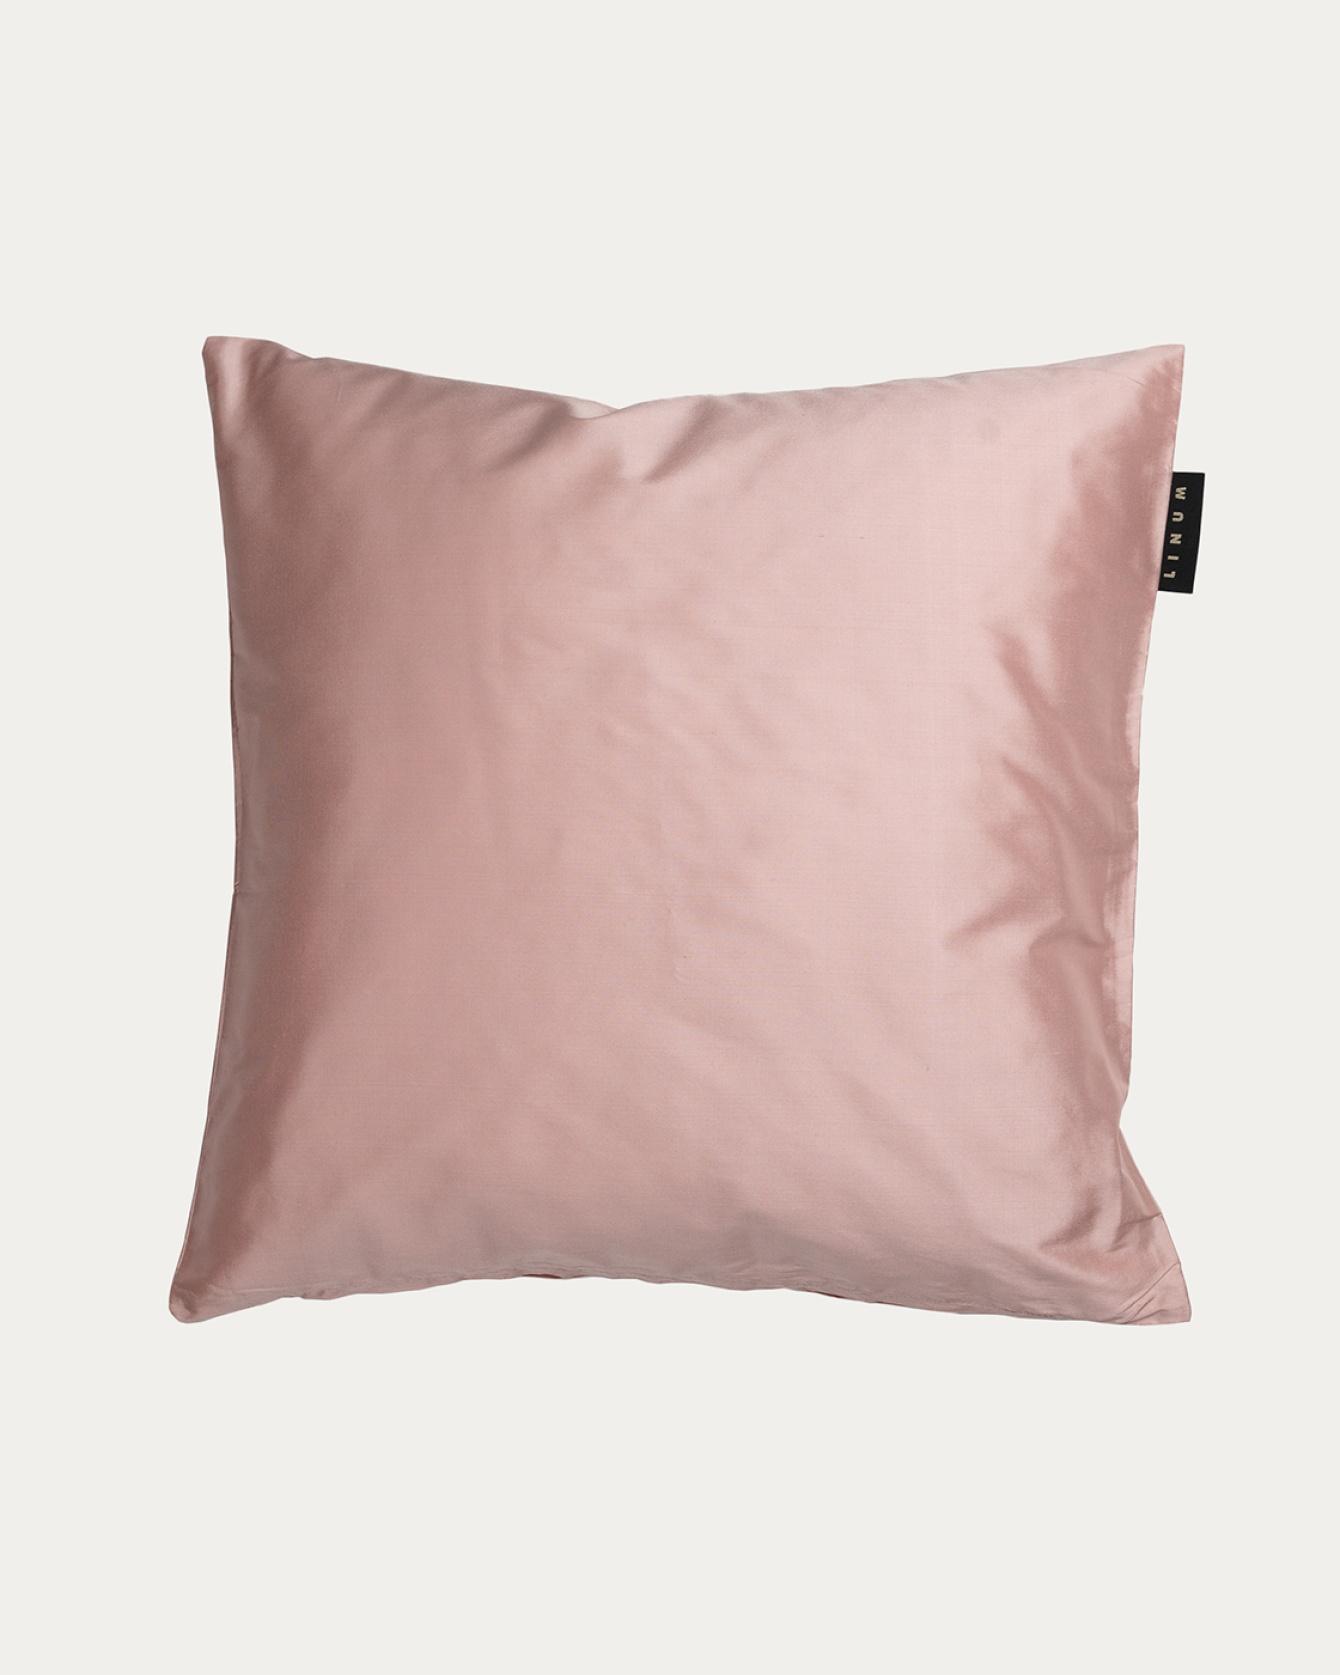 Produktbild dammig rosa SILK kuddfodral av 100% dupionsilke som ger ett fint lyster från LINUM DESIGN. Storlek 50x50 cm.